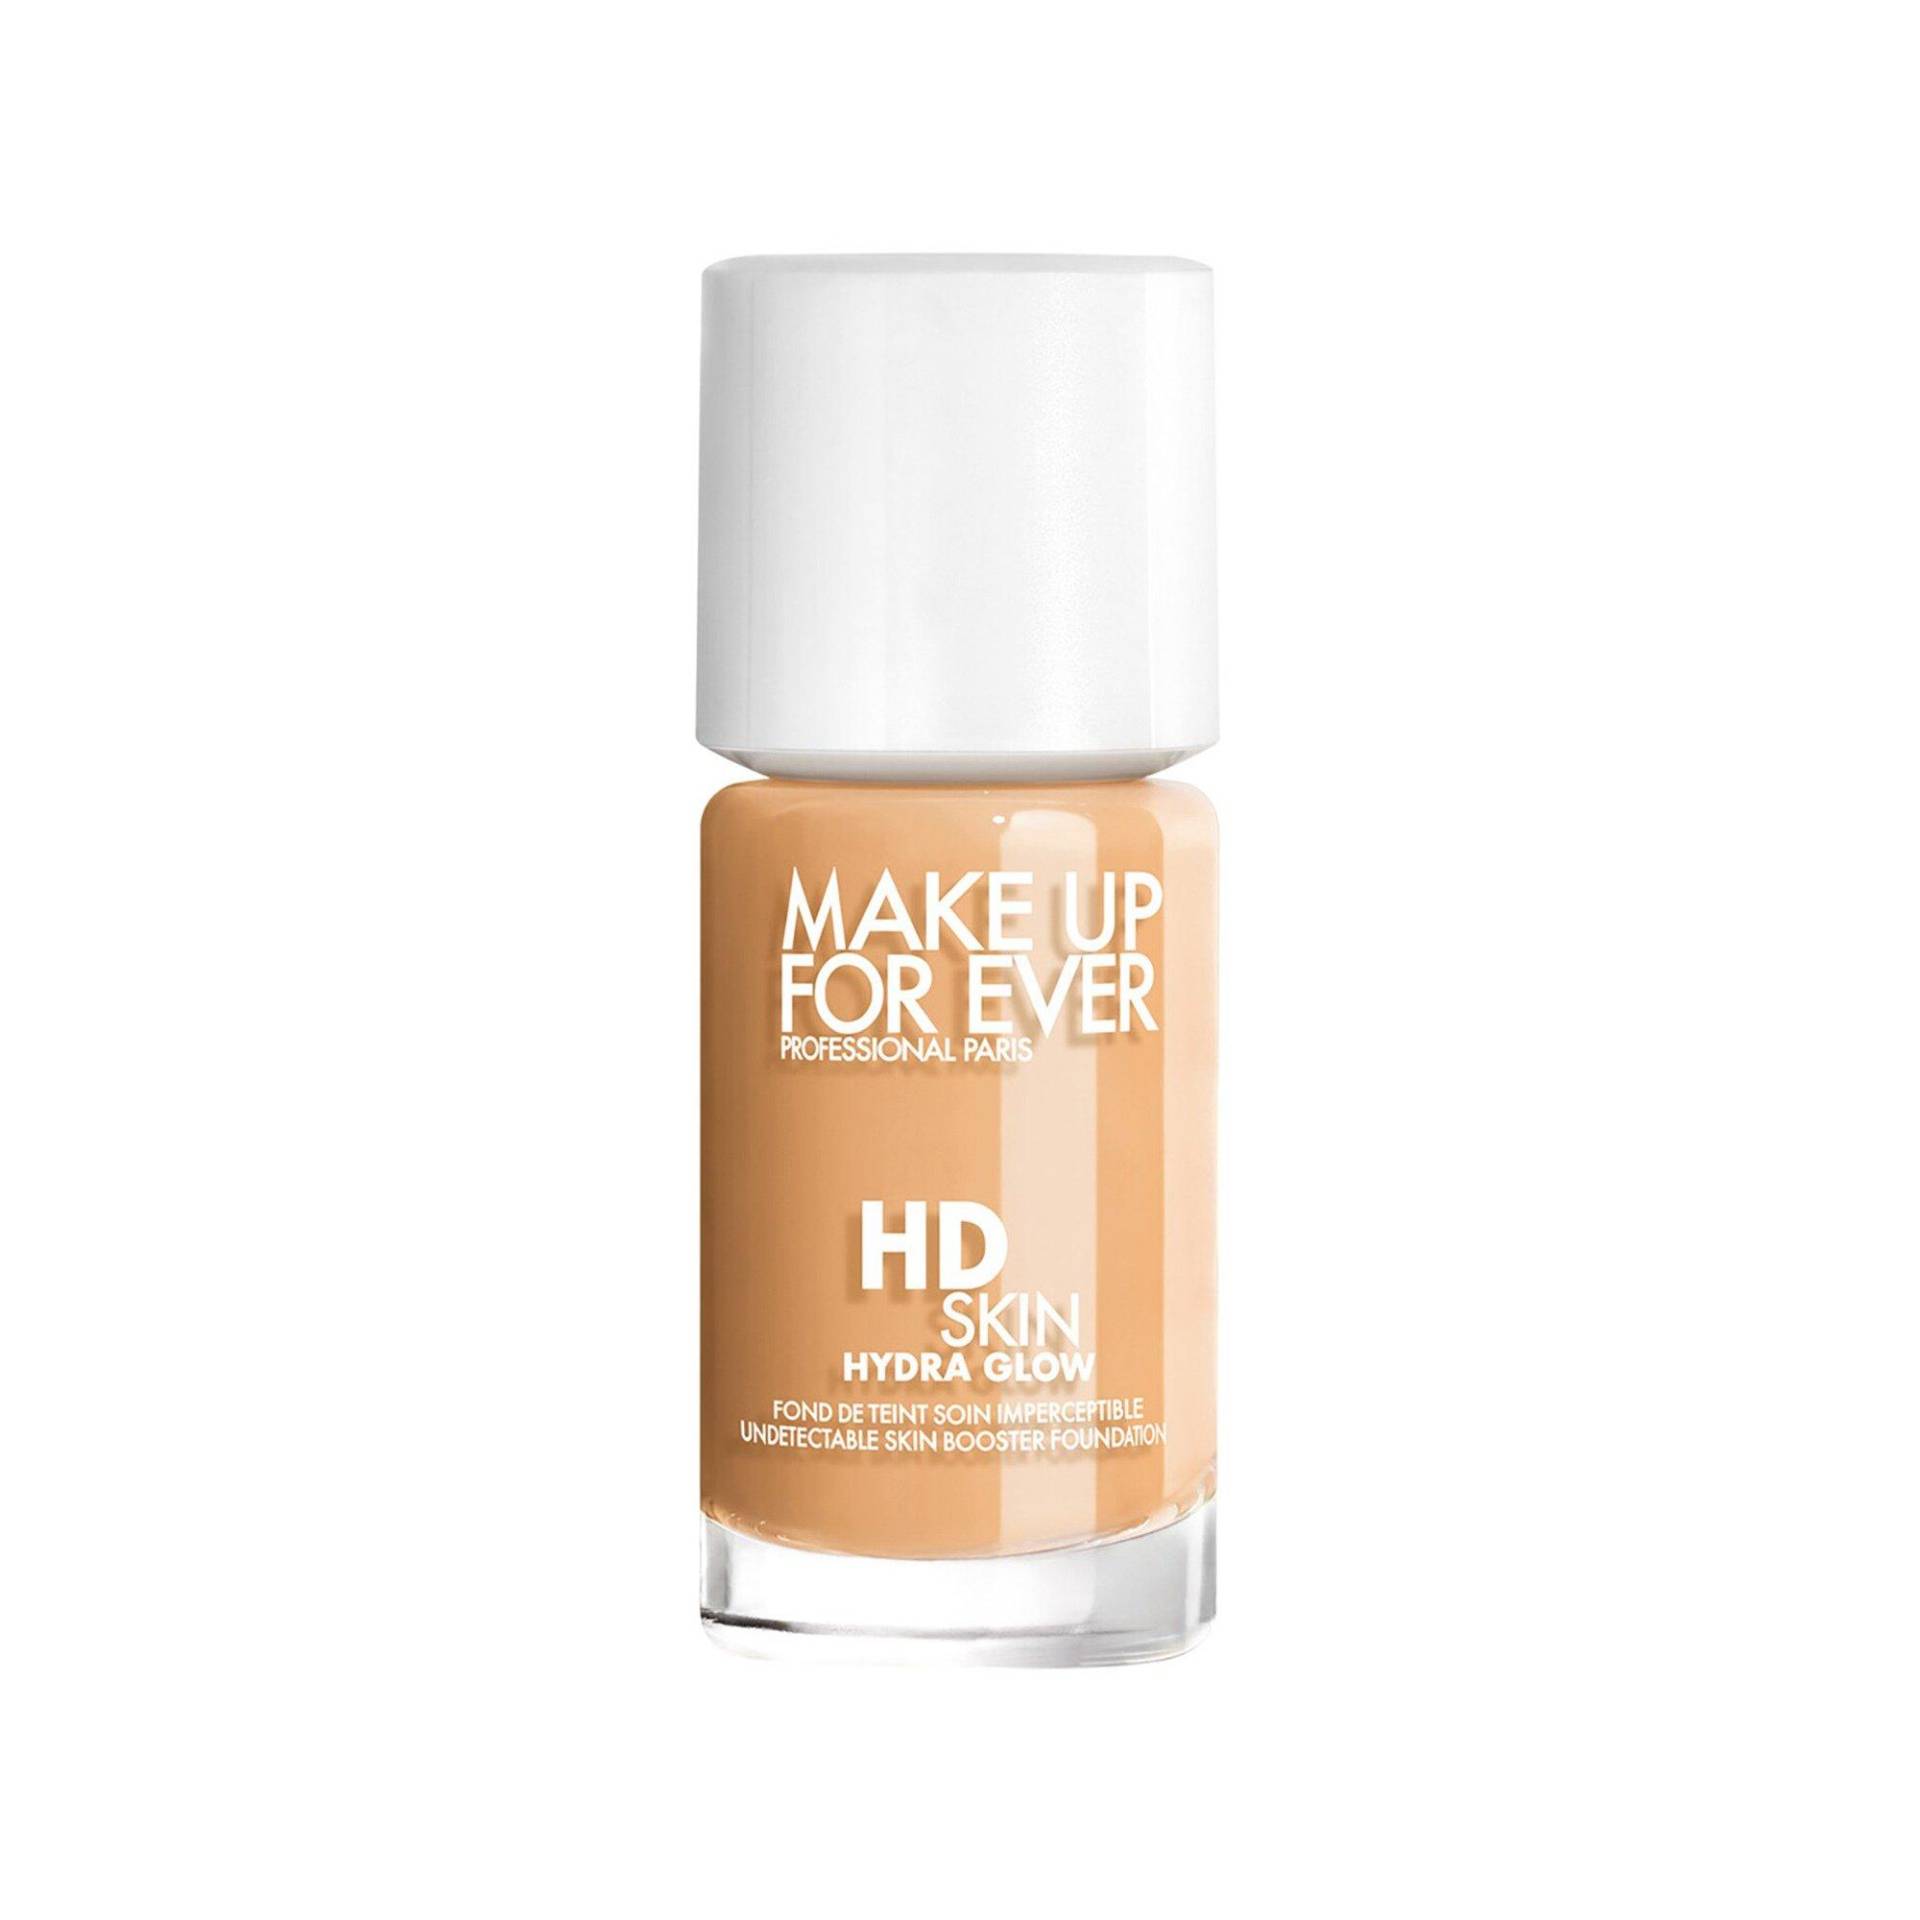 Hd Skin Hydra Glow - Unmerkliche Foundation, Ausstrahlung & Feuchtigkeitsversorgung Damen Y 30ml von Make up For ever